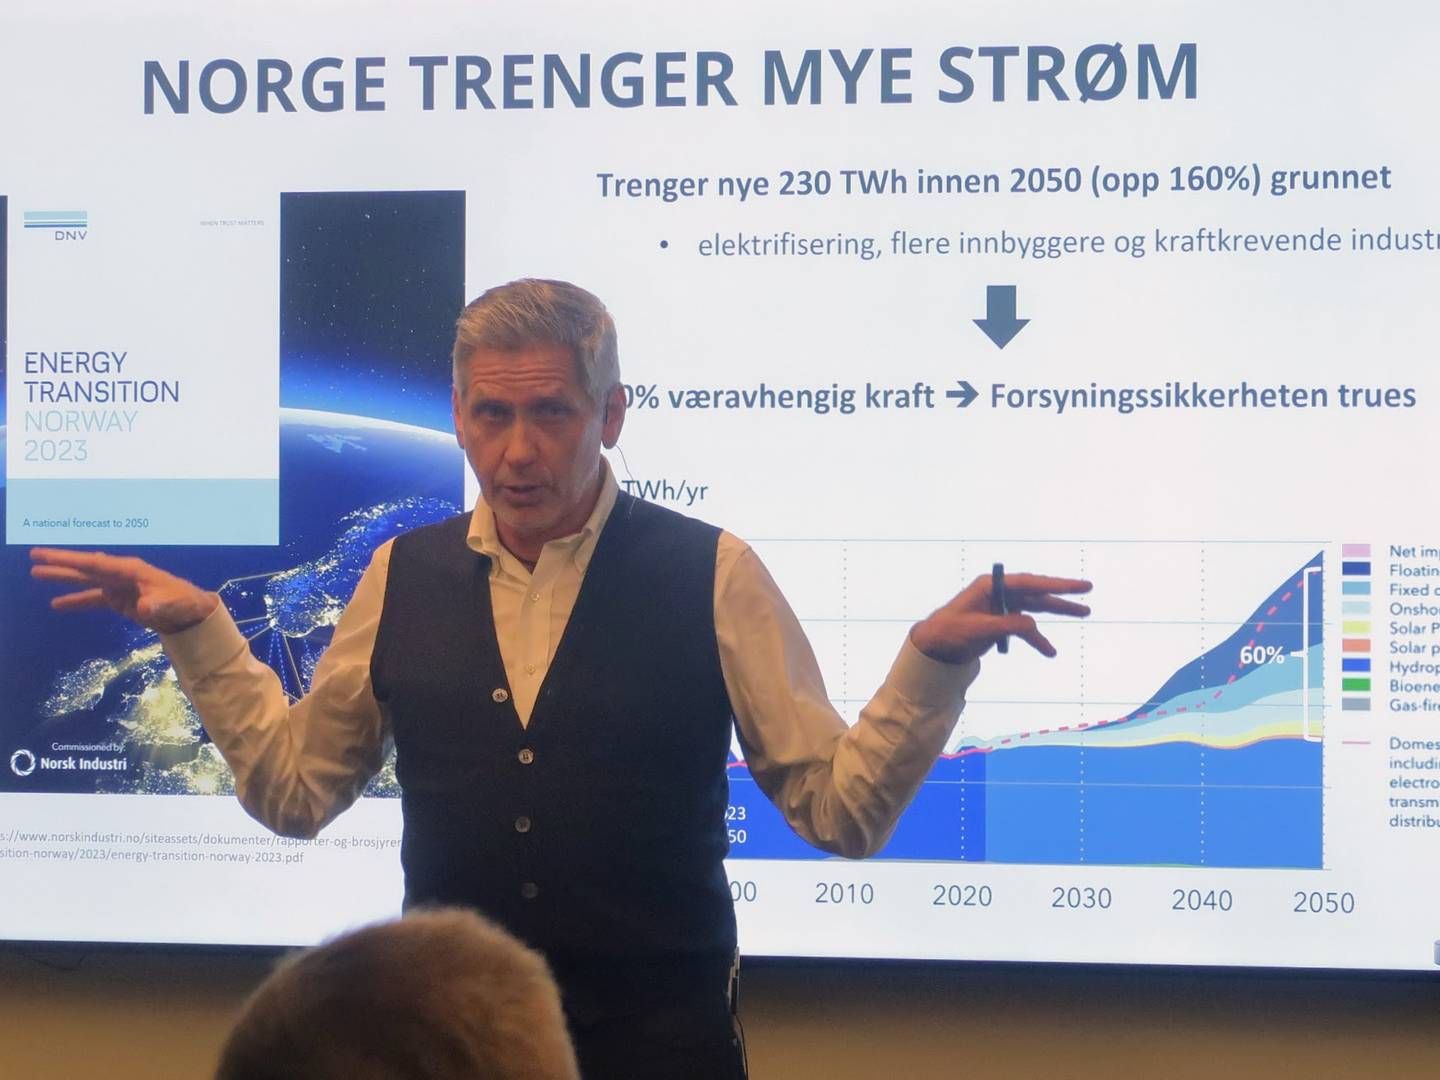 FORSYNINGSSIKKERHET: Jonny Hesthammer trekker frem forsyningssikkerhet som et stadig viktigere argument for at Norge bør satse på kjernekraft. | Foto: Anders Lie Brenna, EnergiWatch